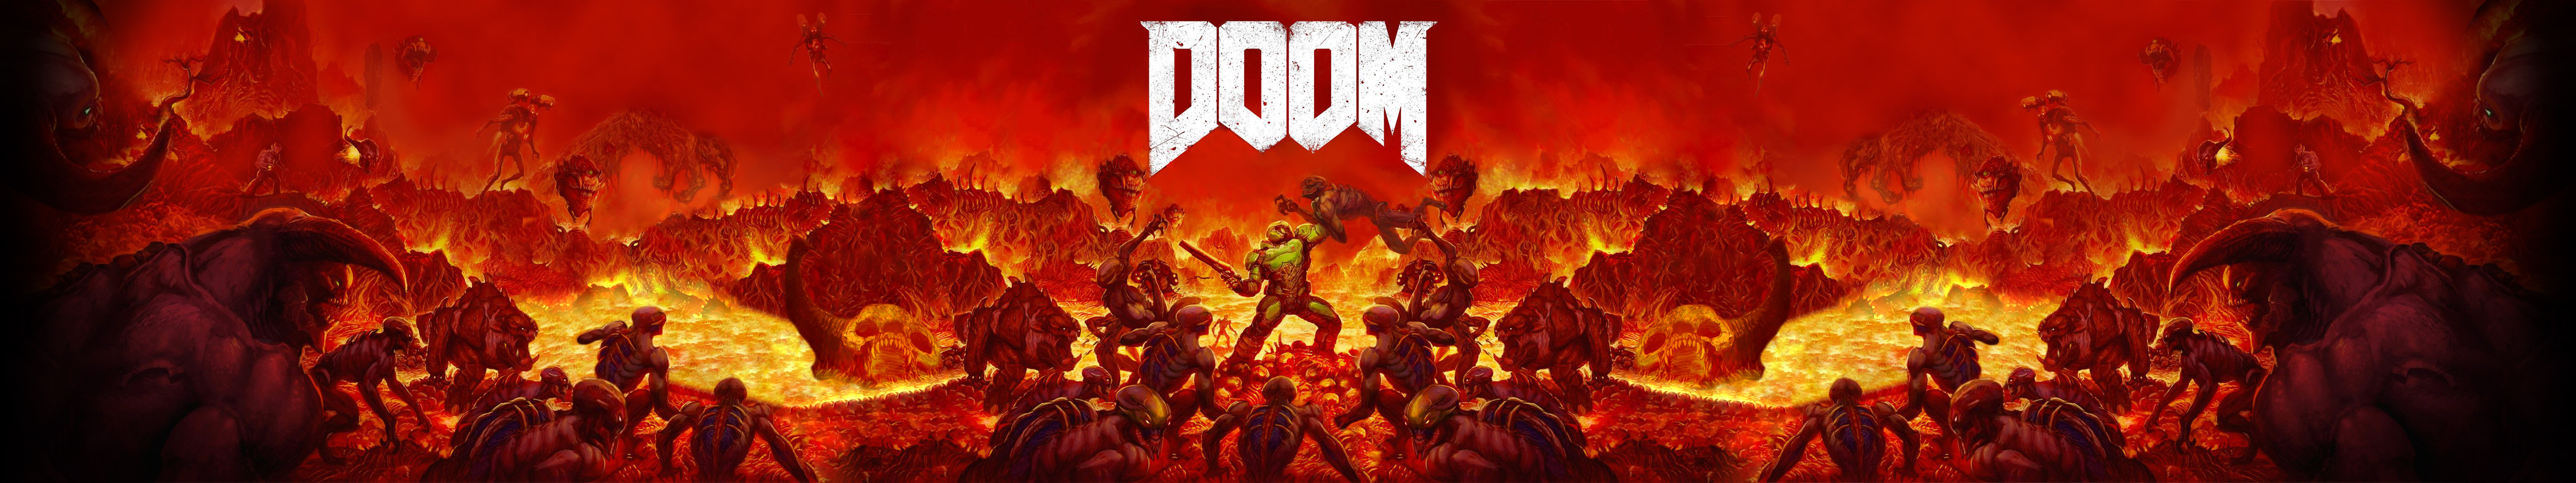 Doom Wallpaper Using Original Game Artwork